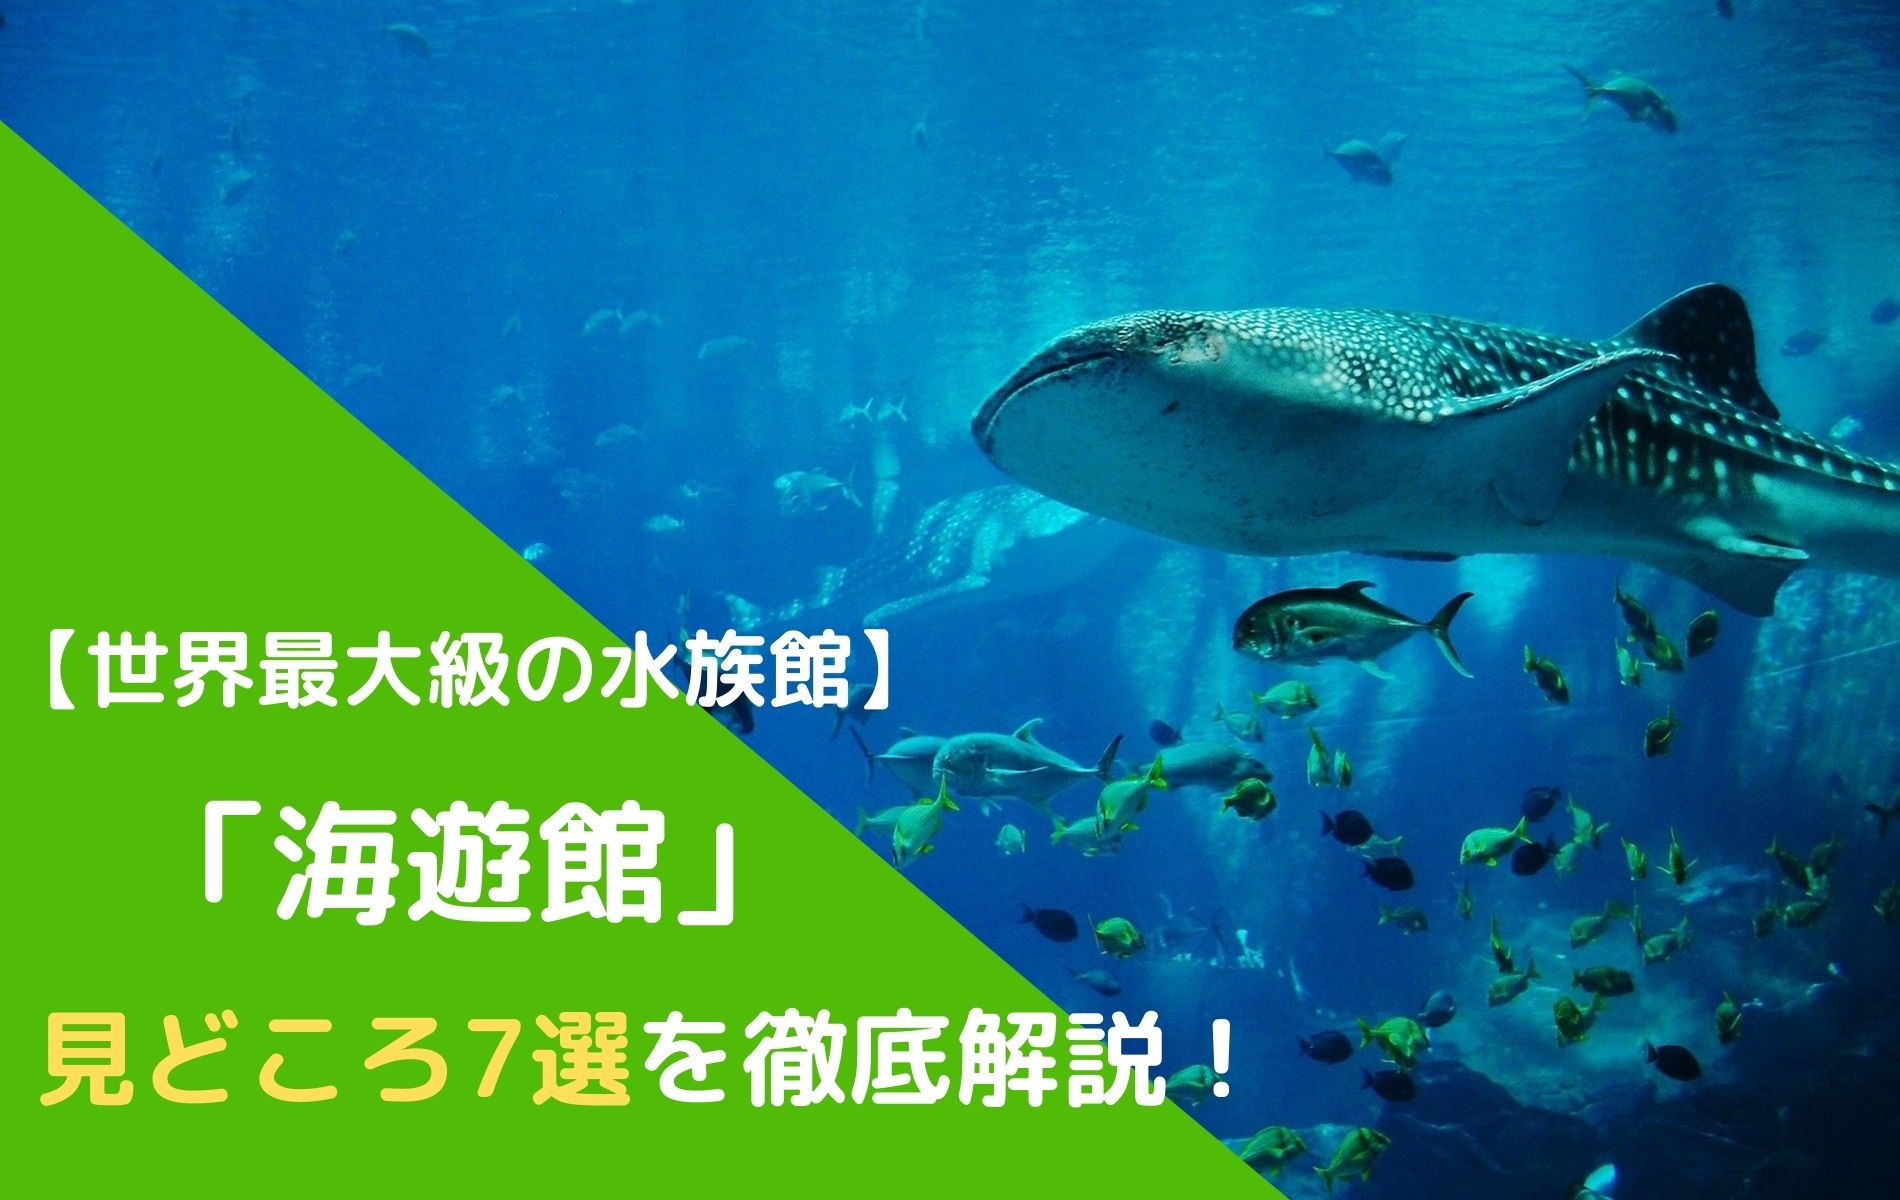 大阪にある世界最大級の水族館 海遊館 の見どころ7選を徹底解説 ふぉむすい